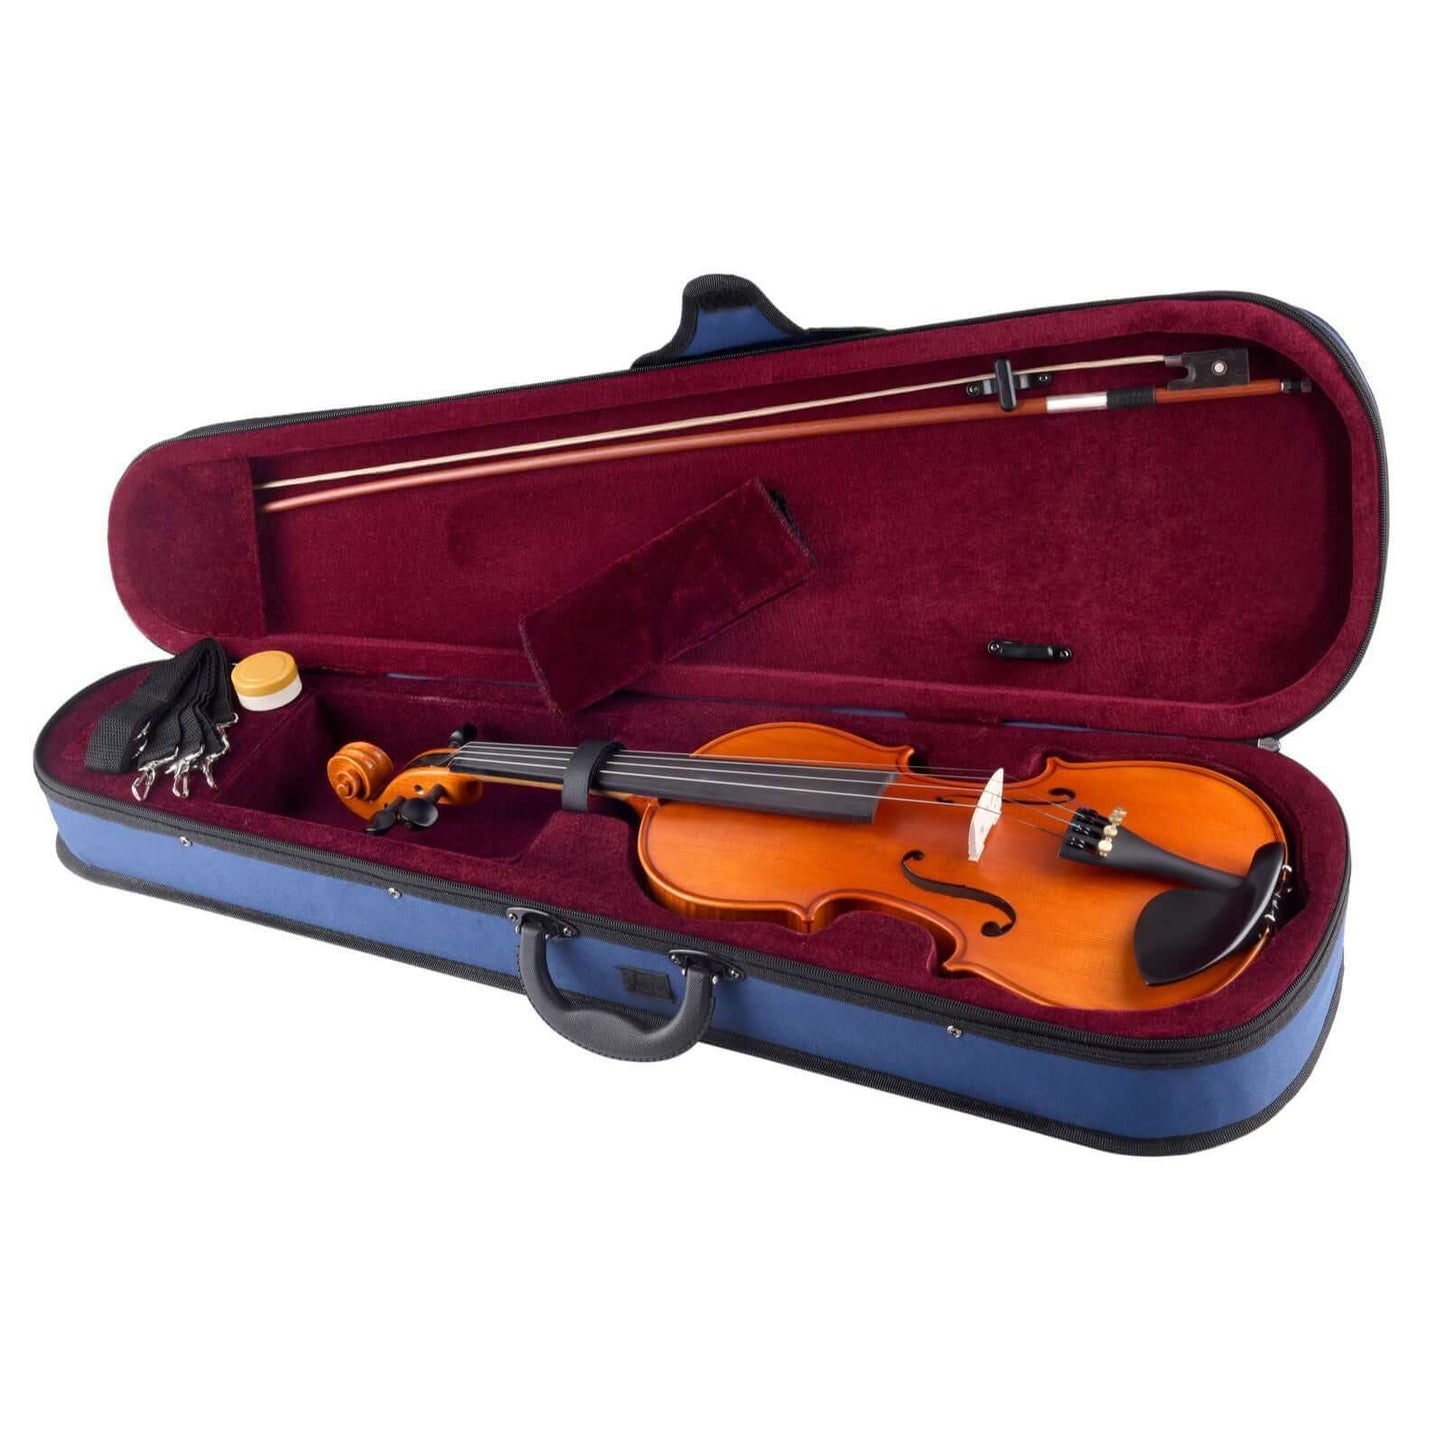 Axiom Concerto Series Violin Outfit - 1/2 Size School Violin